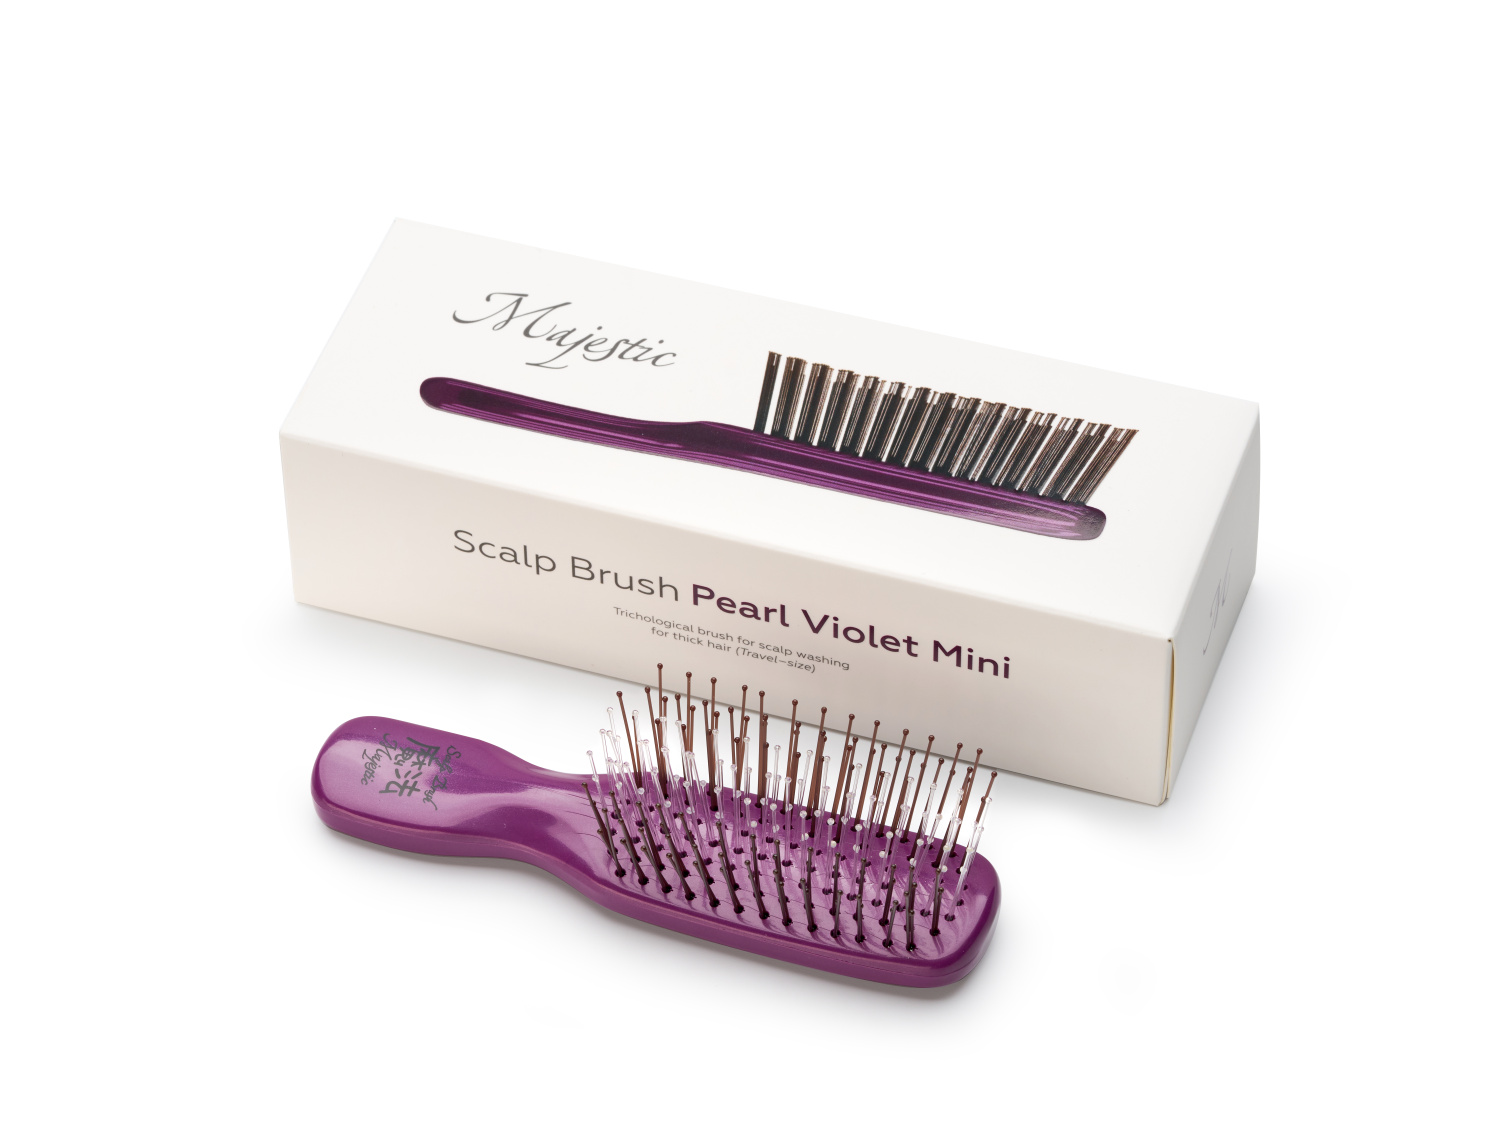 Majestic Scalp Brush Mini Pearl Violet - интернет-магазин профессиональной косметики Spadream, изображение 51649